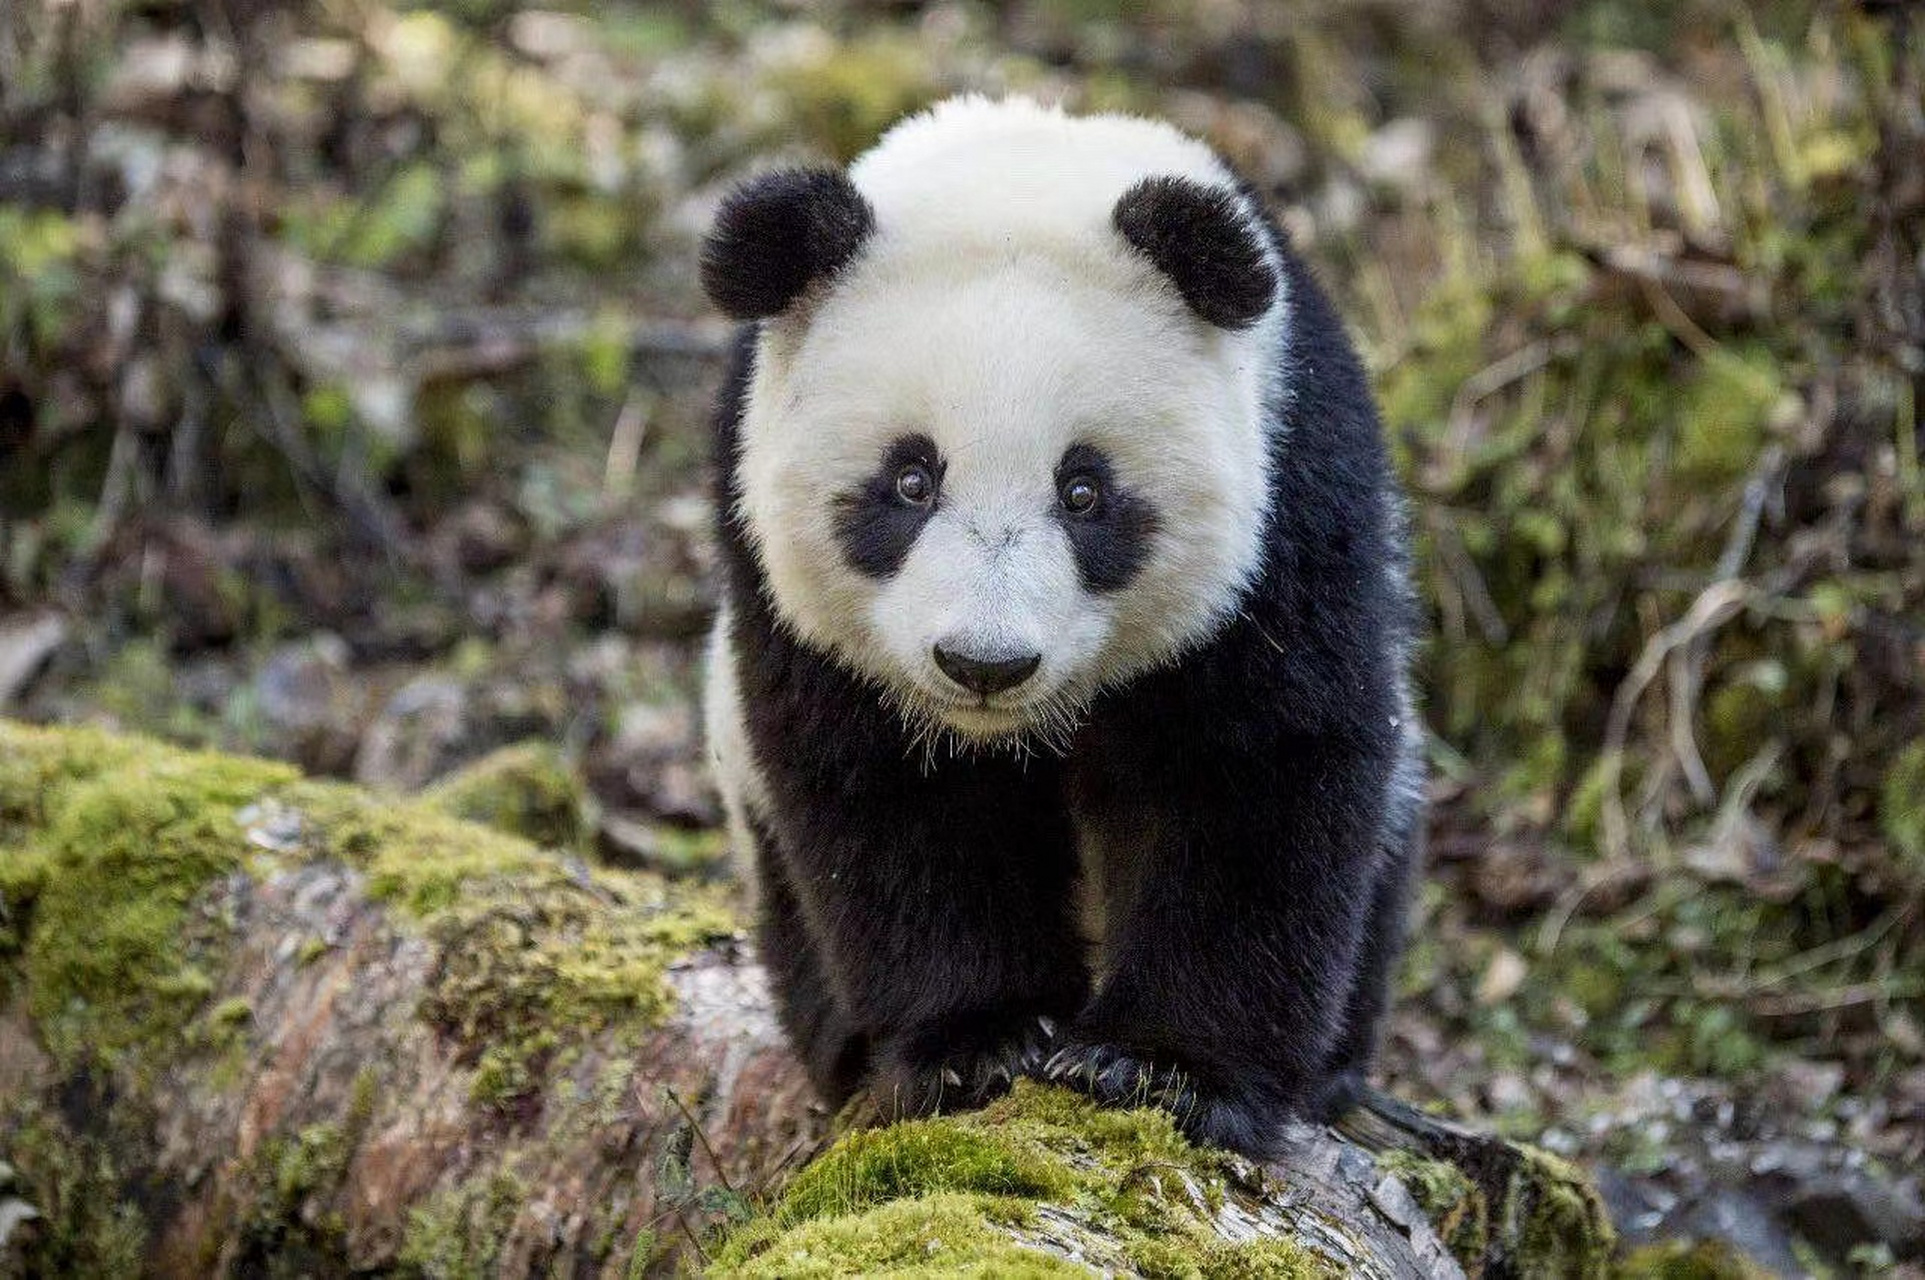 大熊猫憨态可掬,它是可爱的代名词?其实它的真实姓名叫猫熊